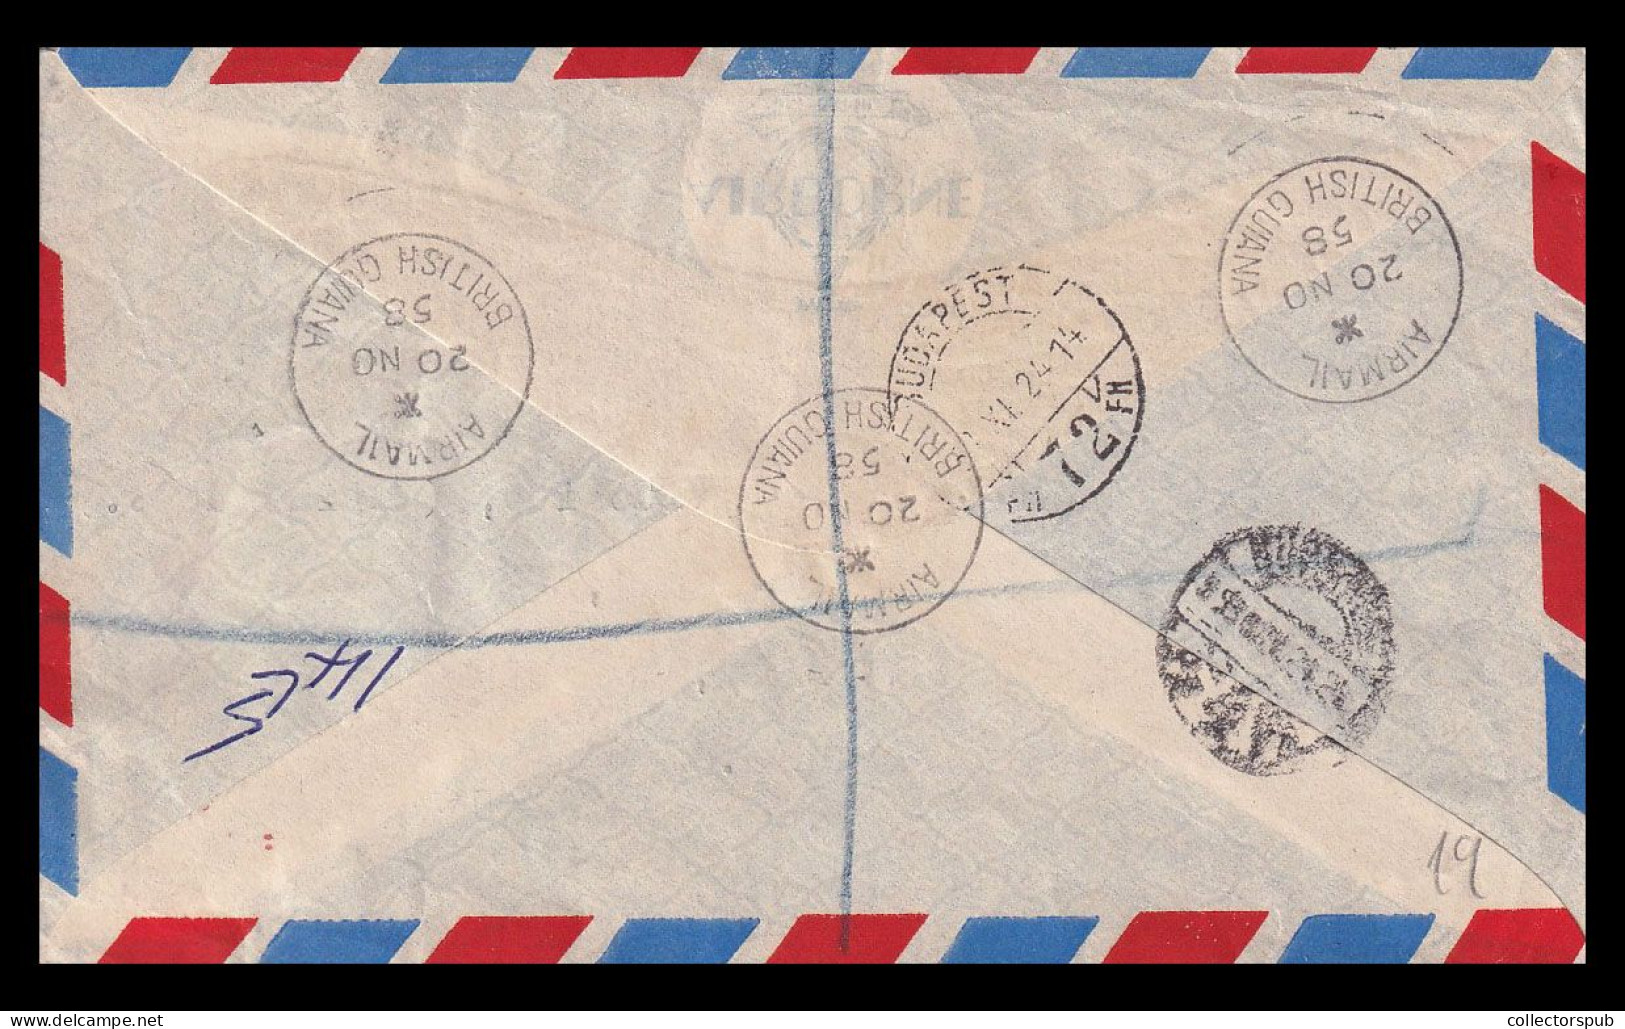 BRITISH GUIANA 1958. Nice Airmail Cover To Hungary - Britisch-Guayana (...-1966)